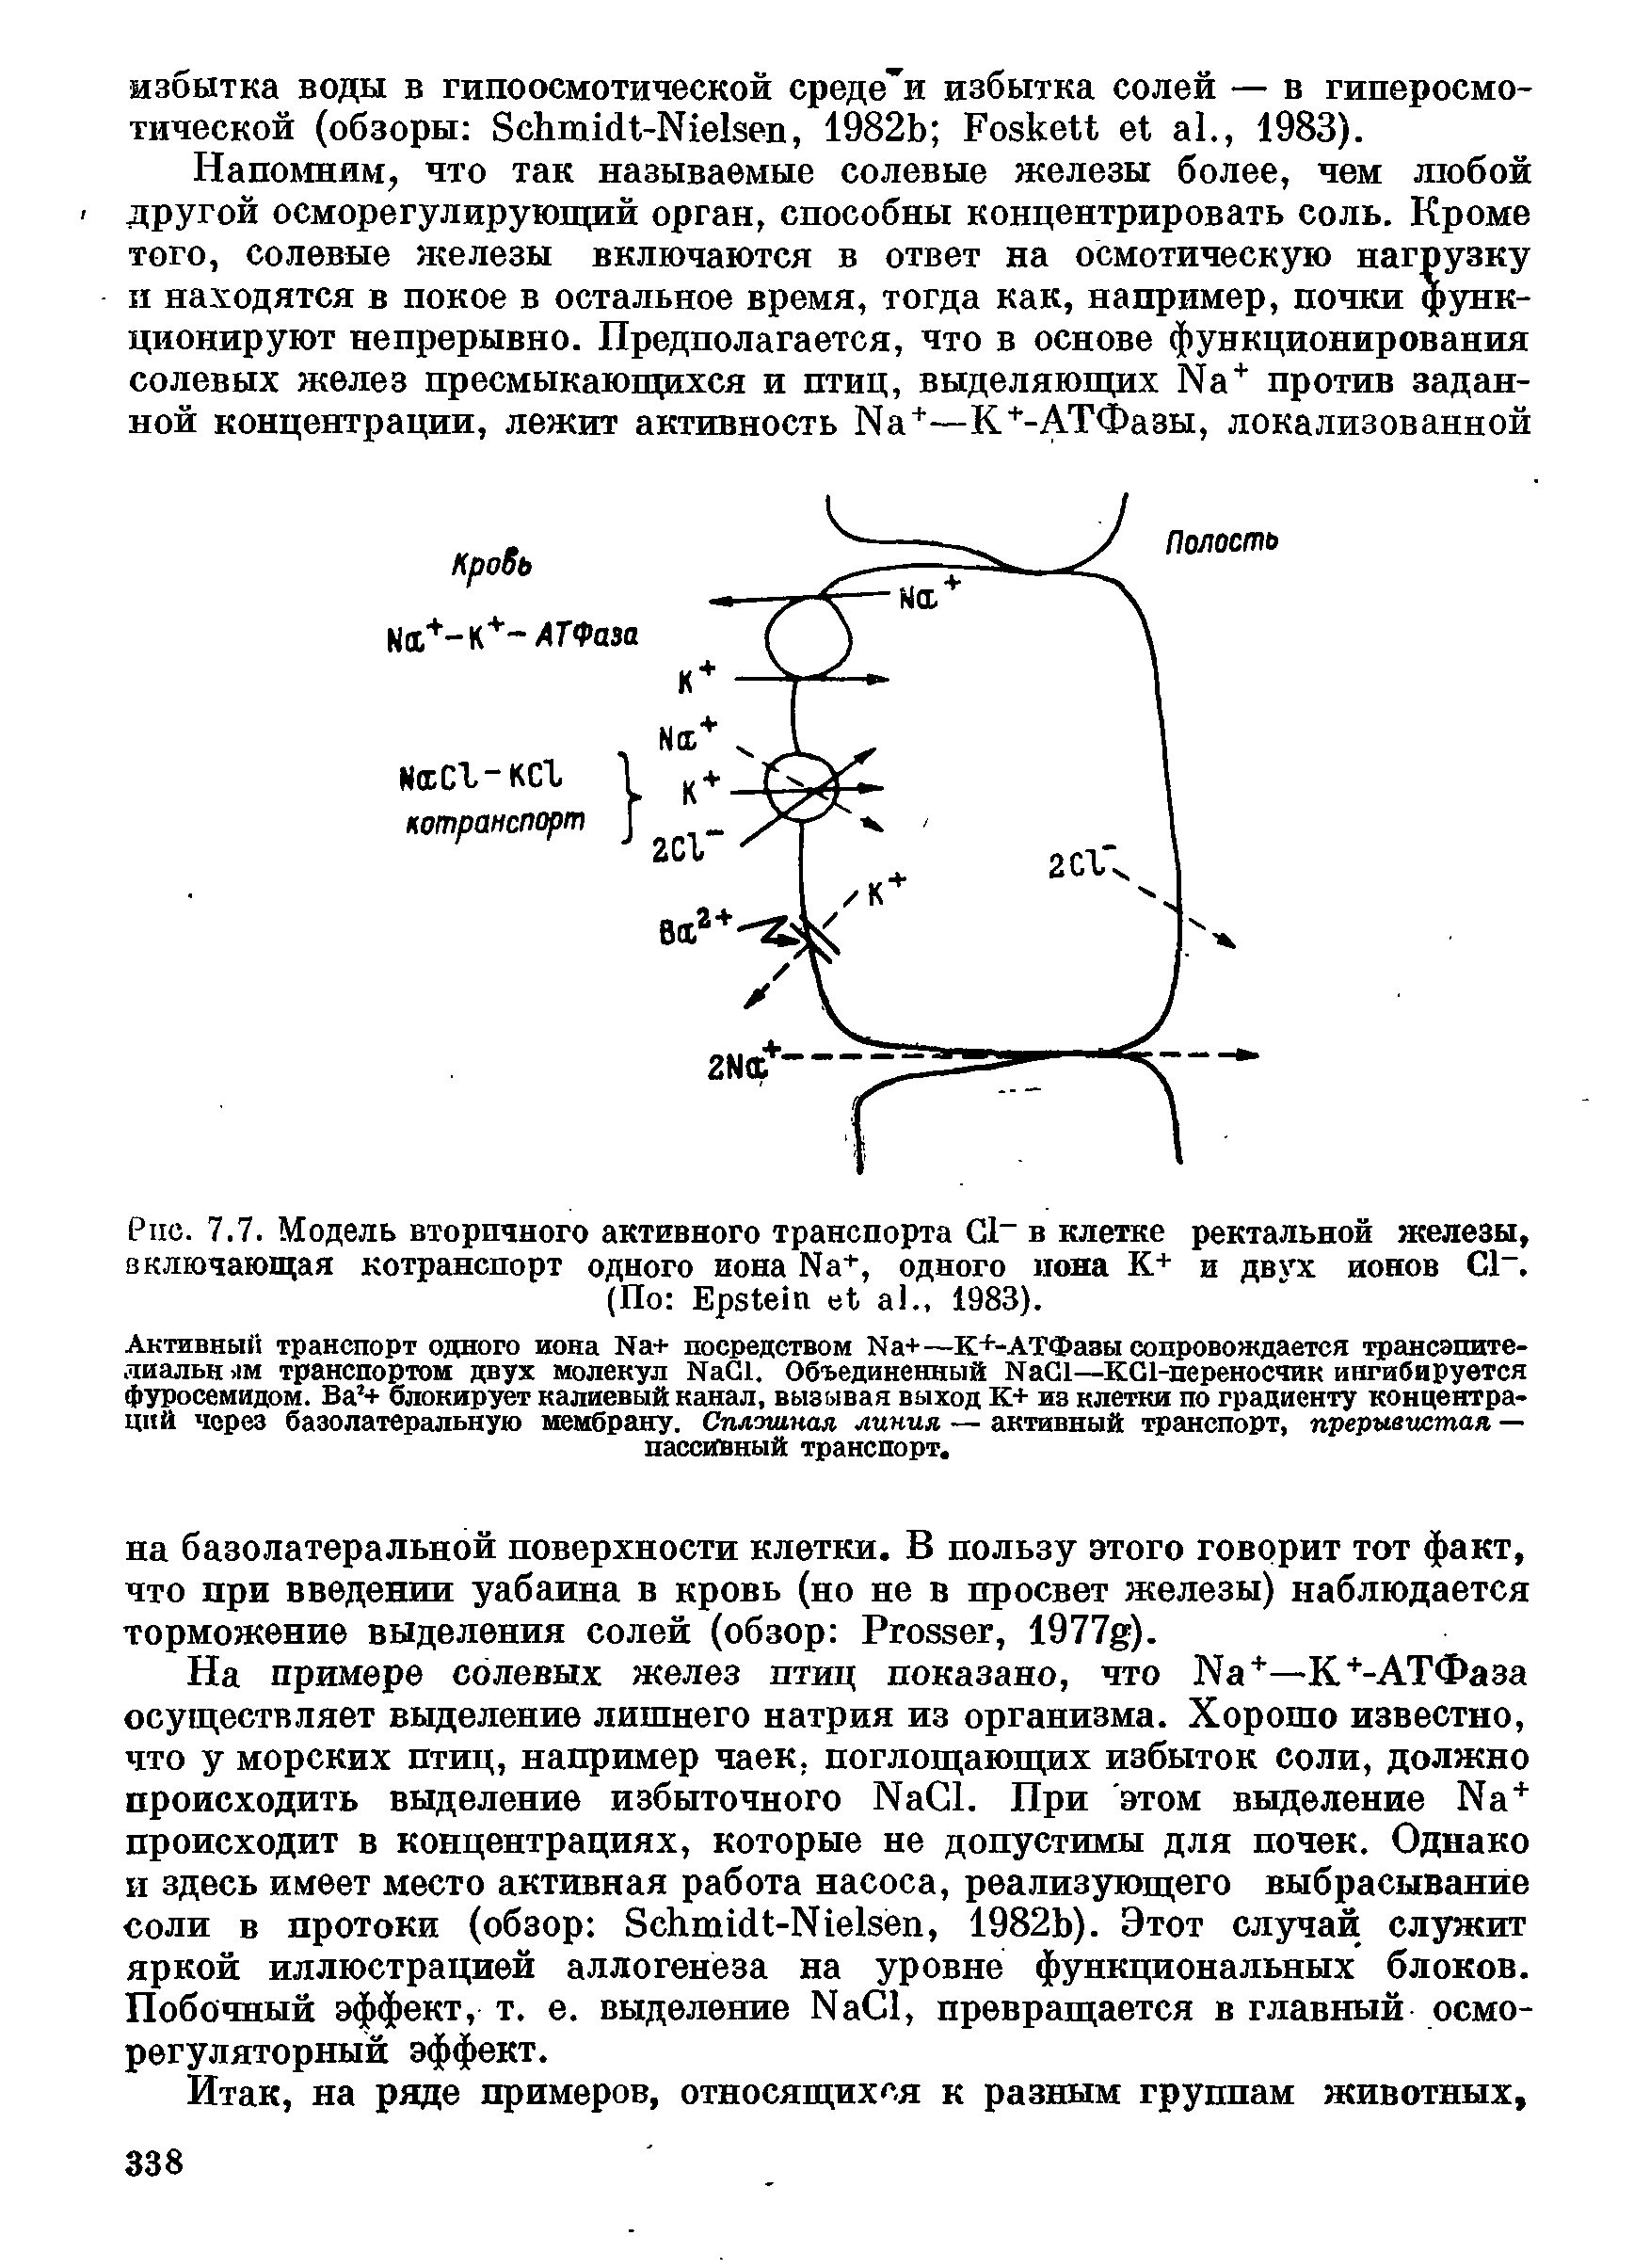 Рис. 7.7. Модель вторичного активного транспорта С1 в клетке ректальной железы, включающая котранспорт одного иона N +, одного иона К+ и двух ионов С1. (По E ., 1983).